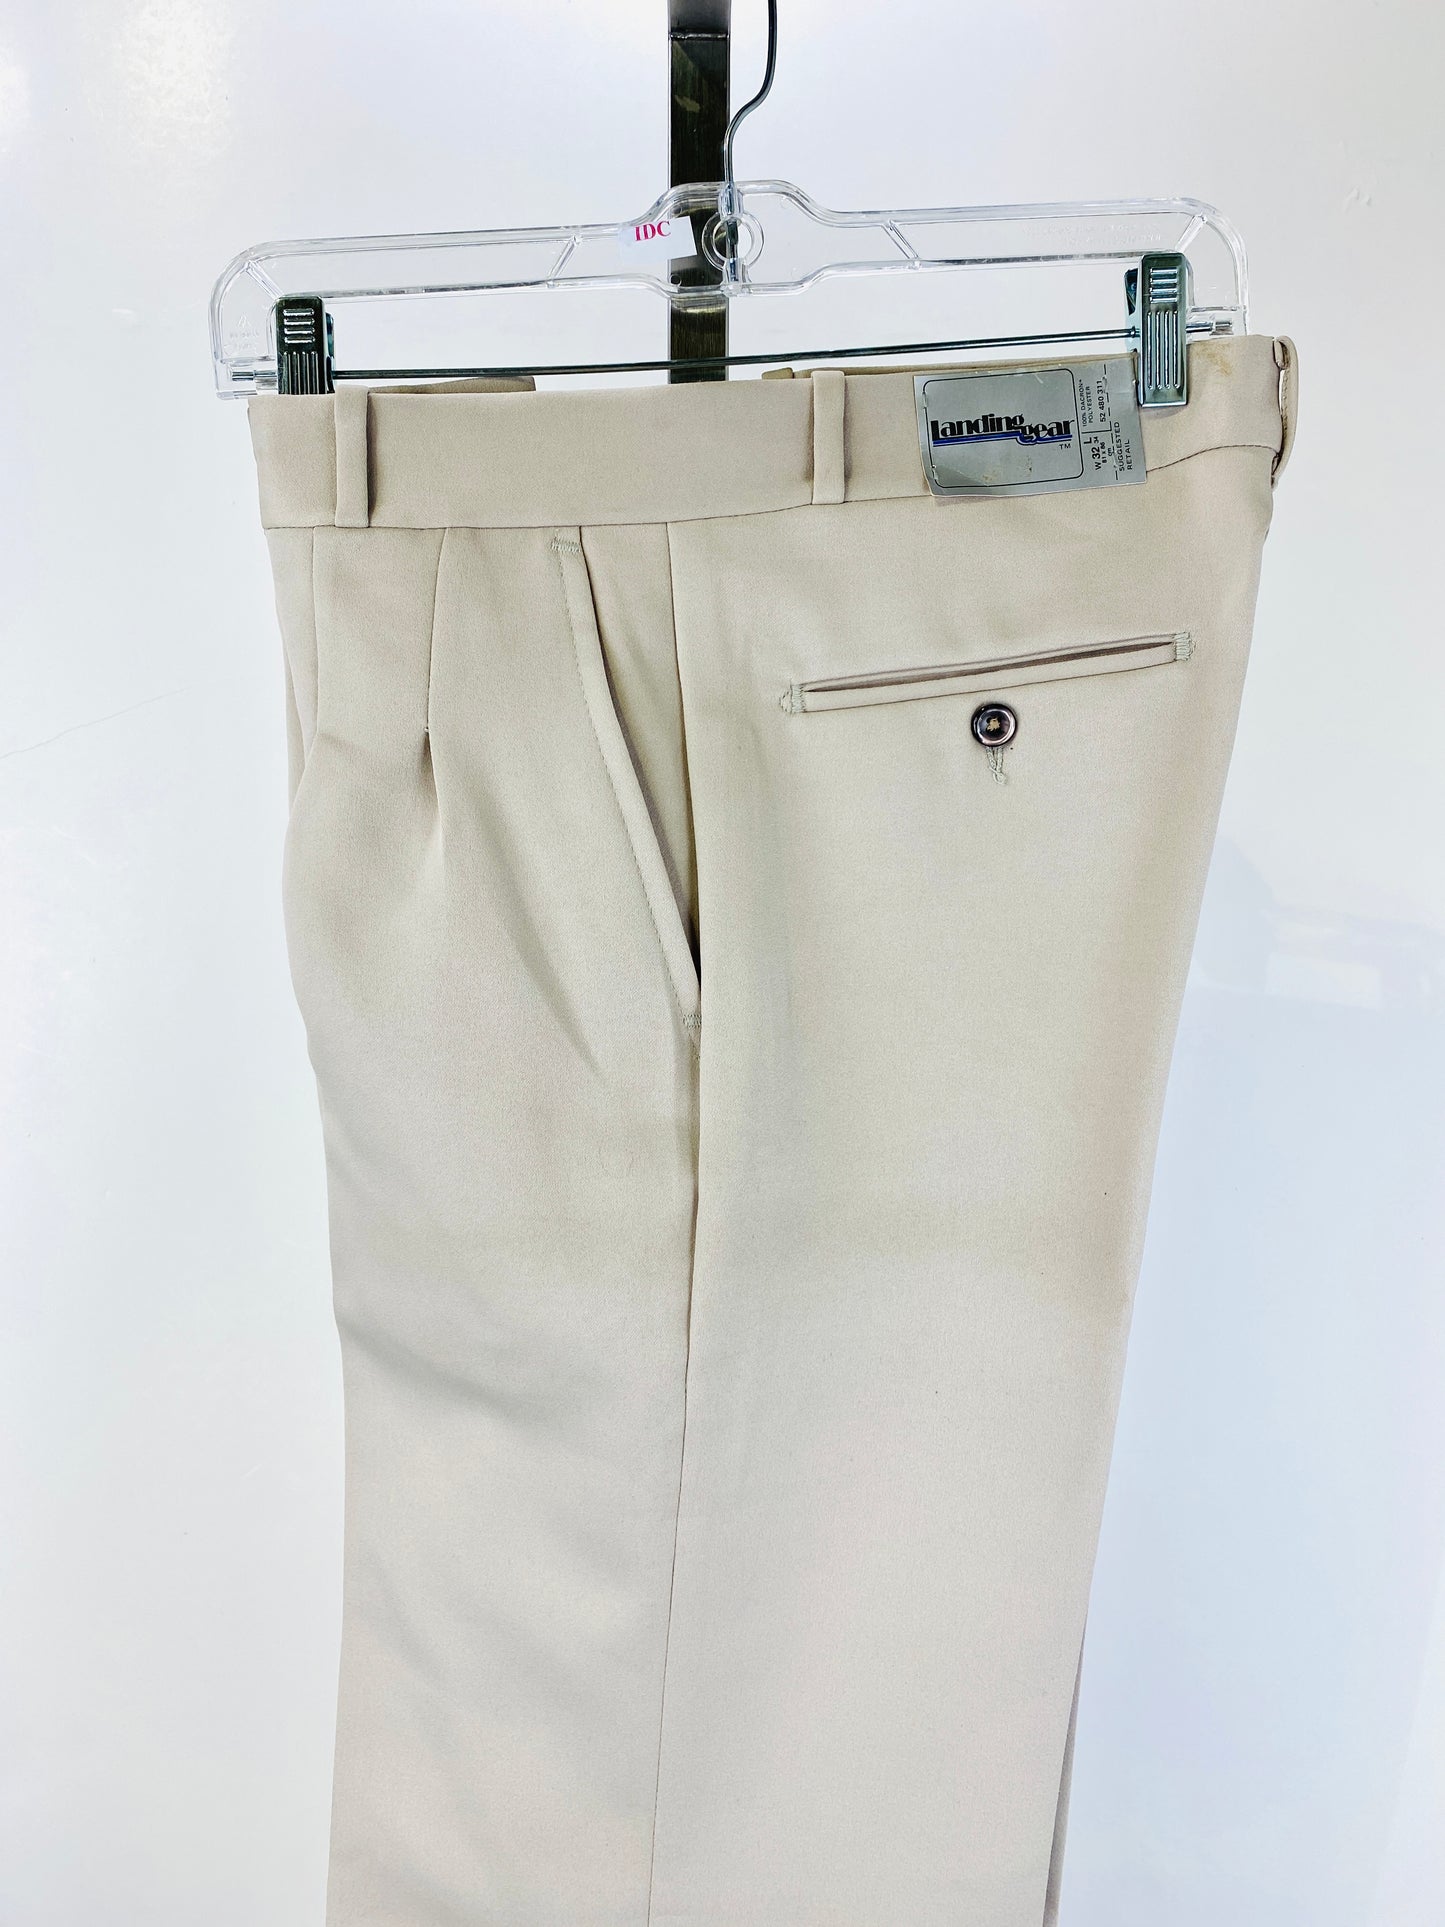 Vintage 1970s Deadstock Straight-Leg Polyester Trouser's, Men's Beige Slacks, NOS